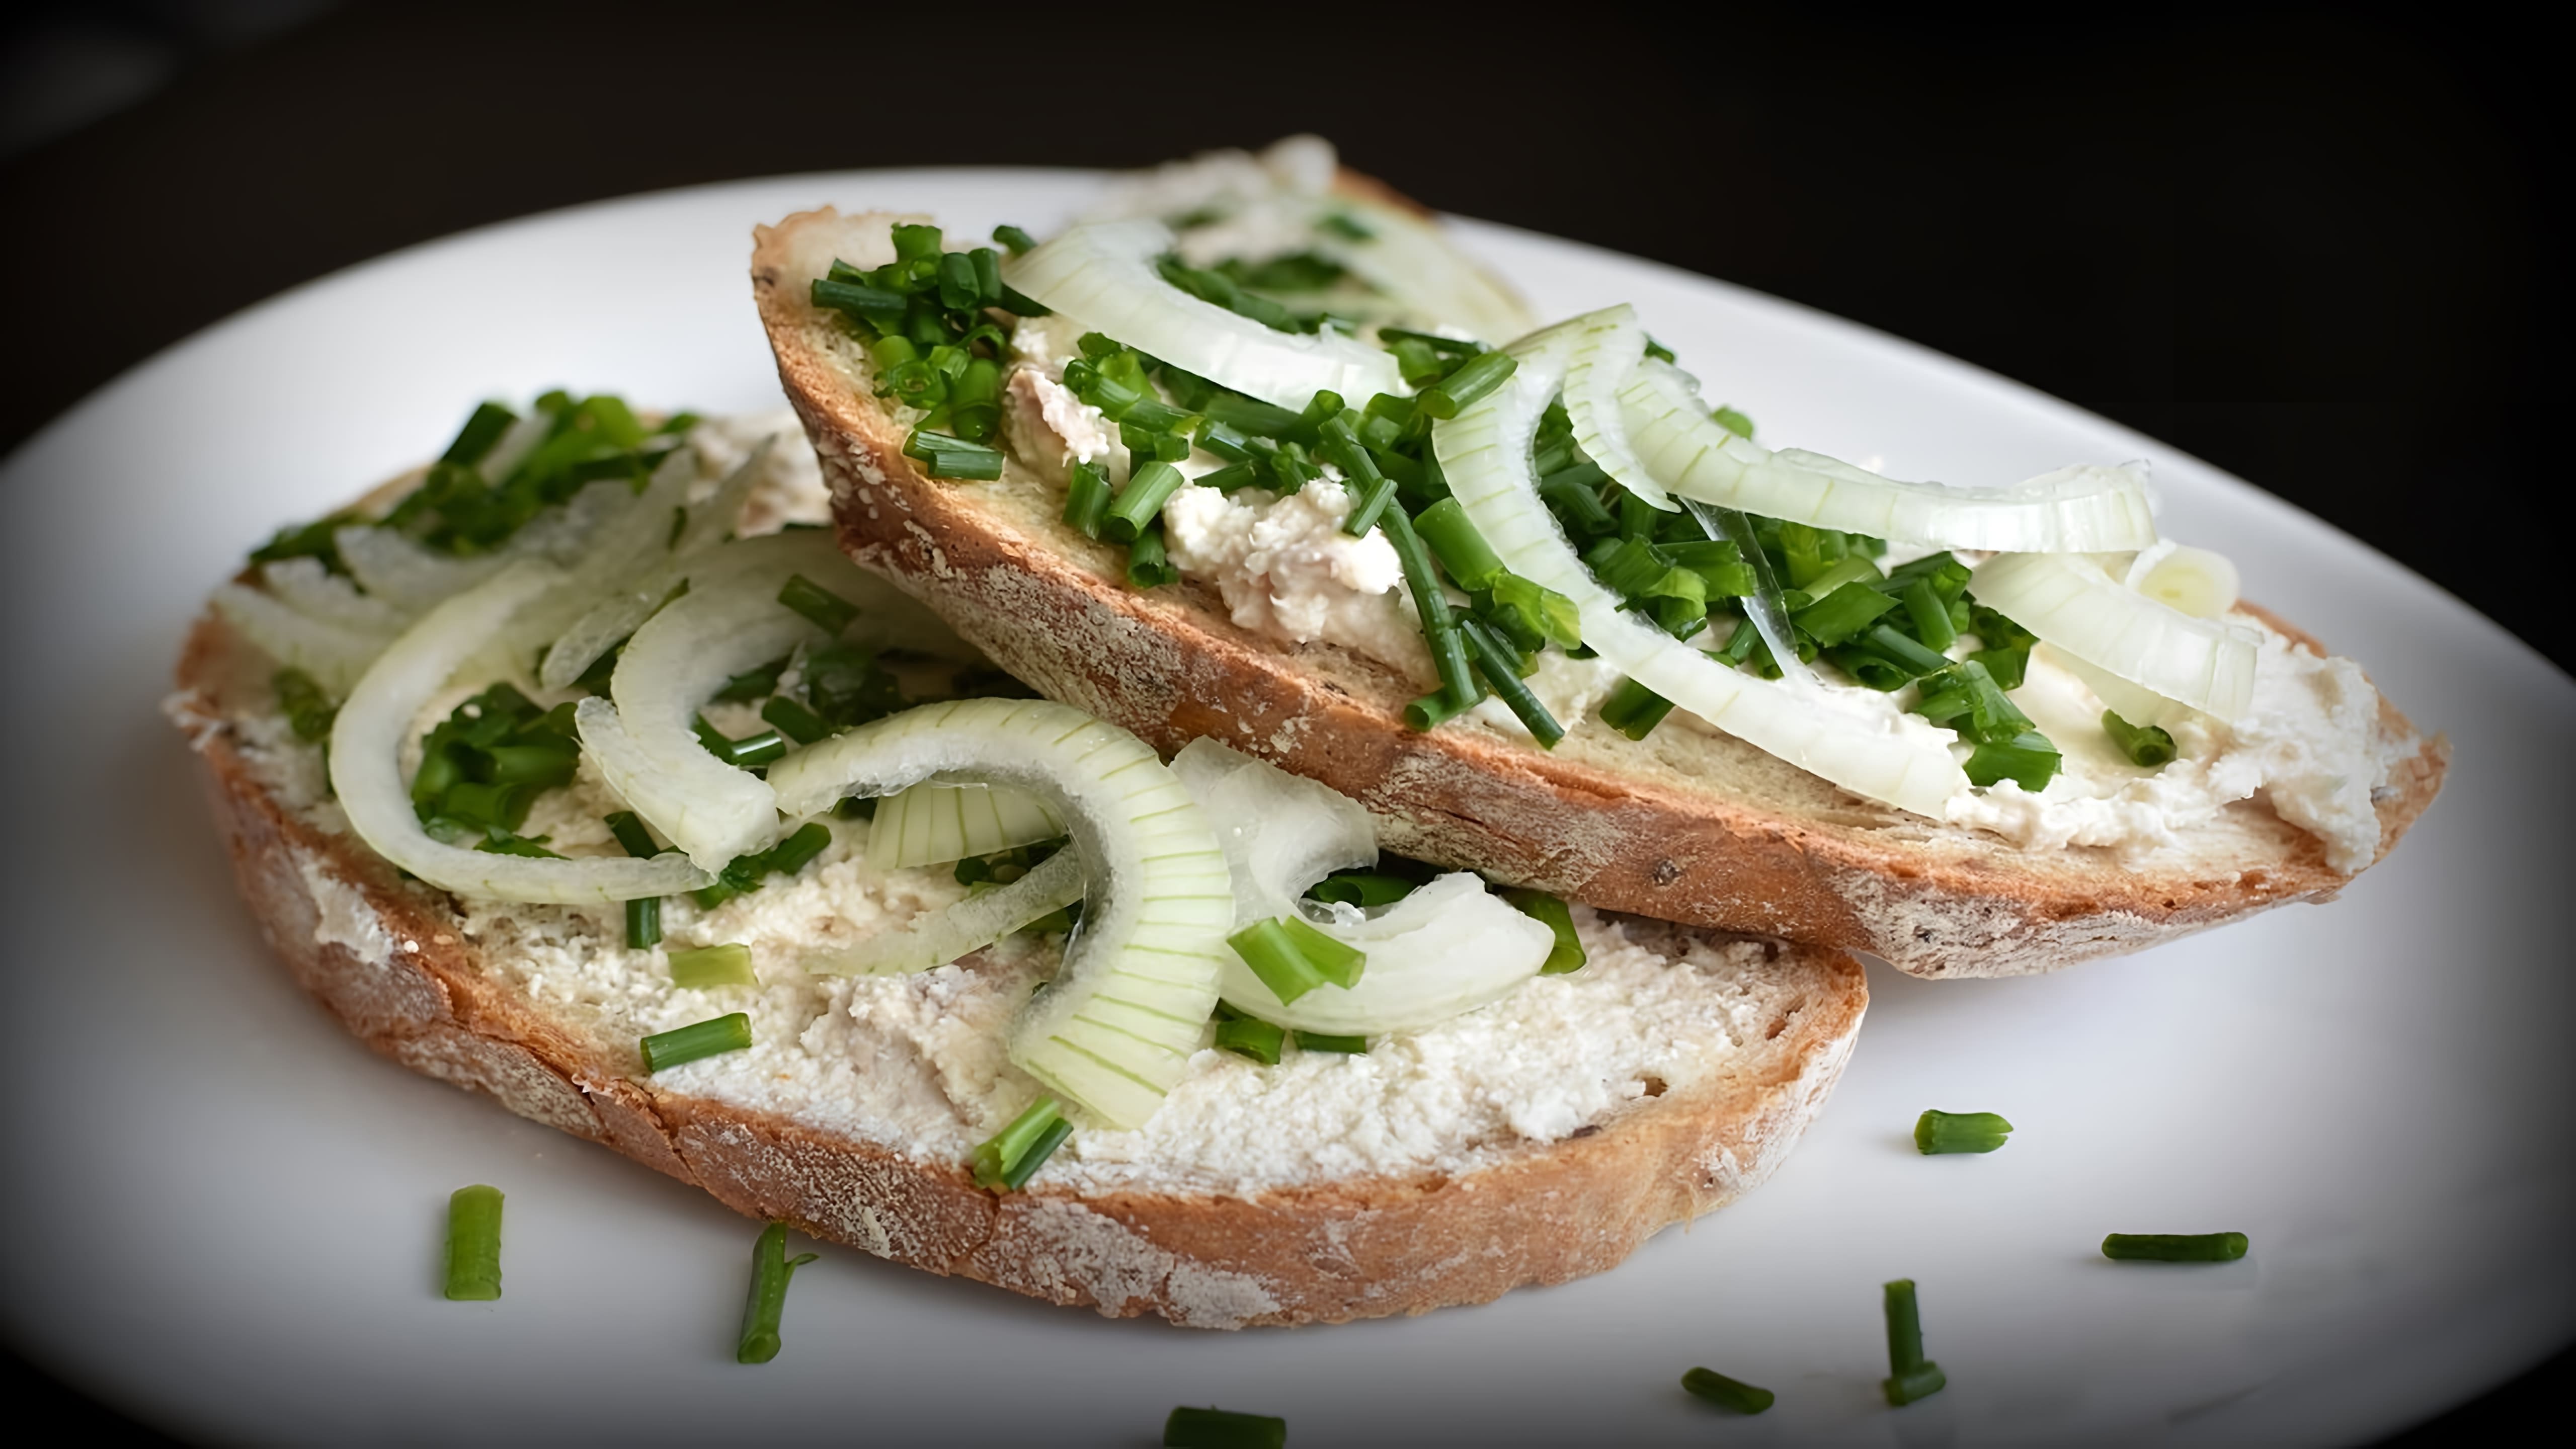 Салат с плавленым сыром и чесноком "Огонек" - это вкусное и простое блюдо, которое можно приготовить в домашних условиях